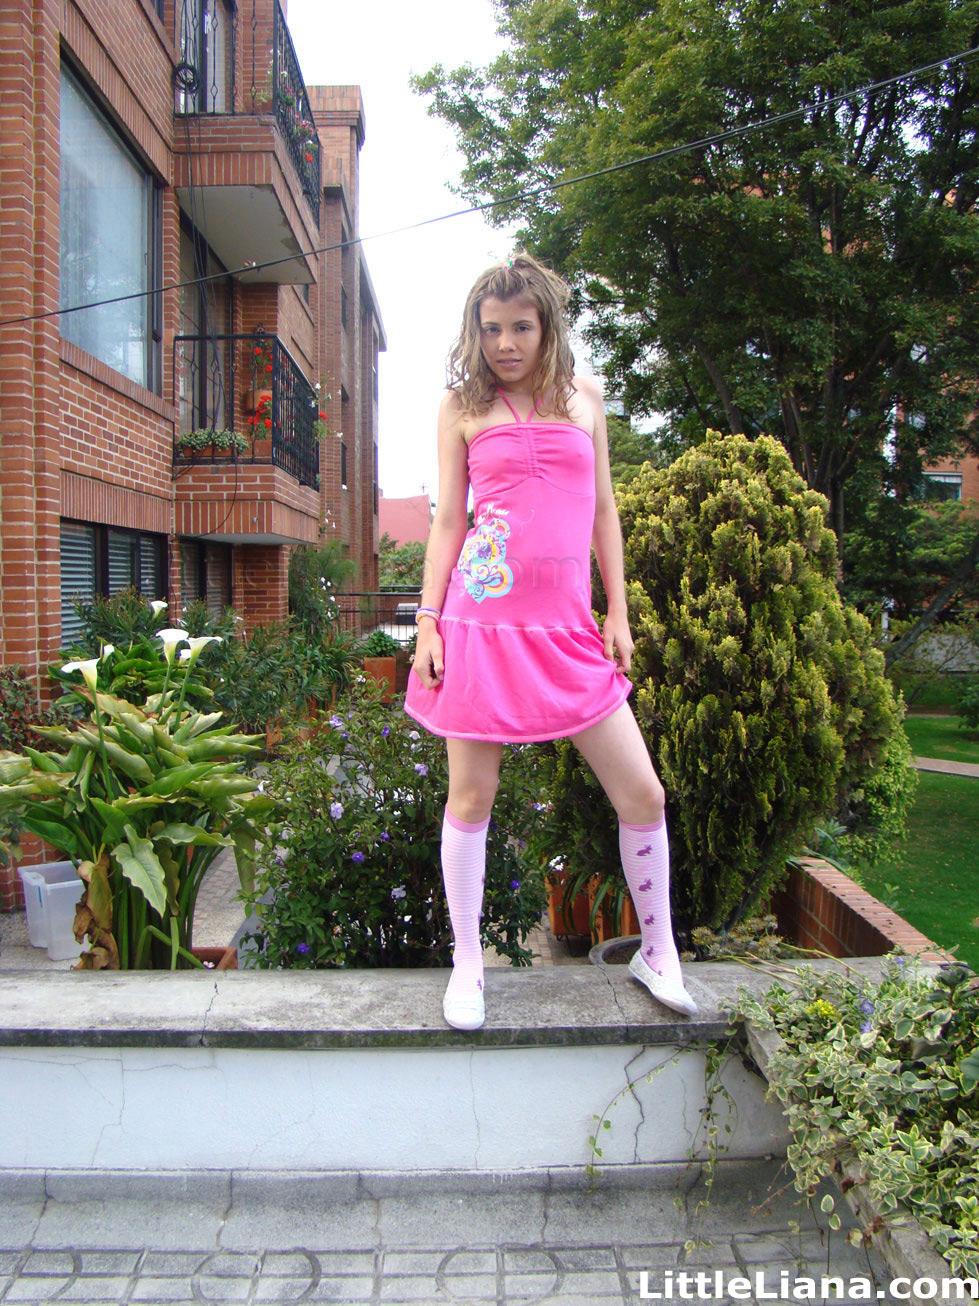 Bilder von Teenie-Mädchen kleine liana sieht hübsch in rosa
 #59023137